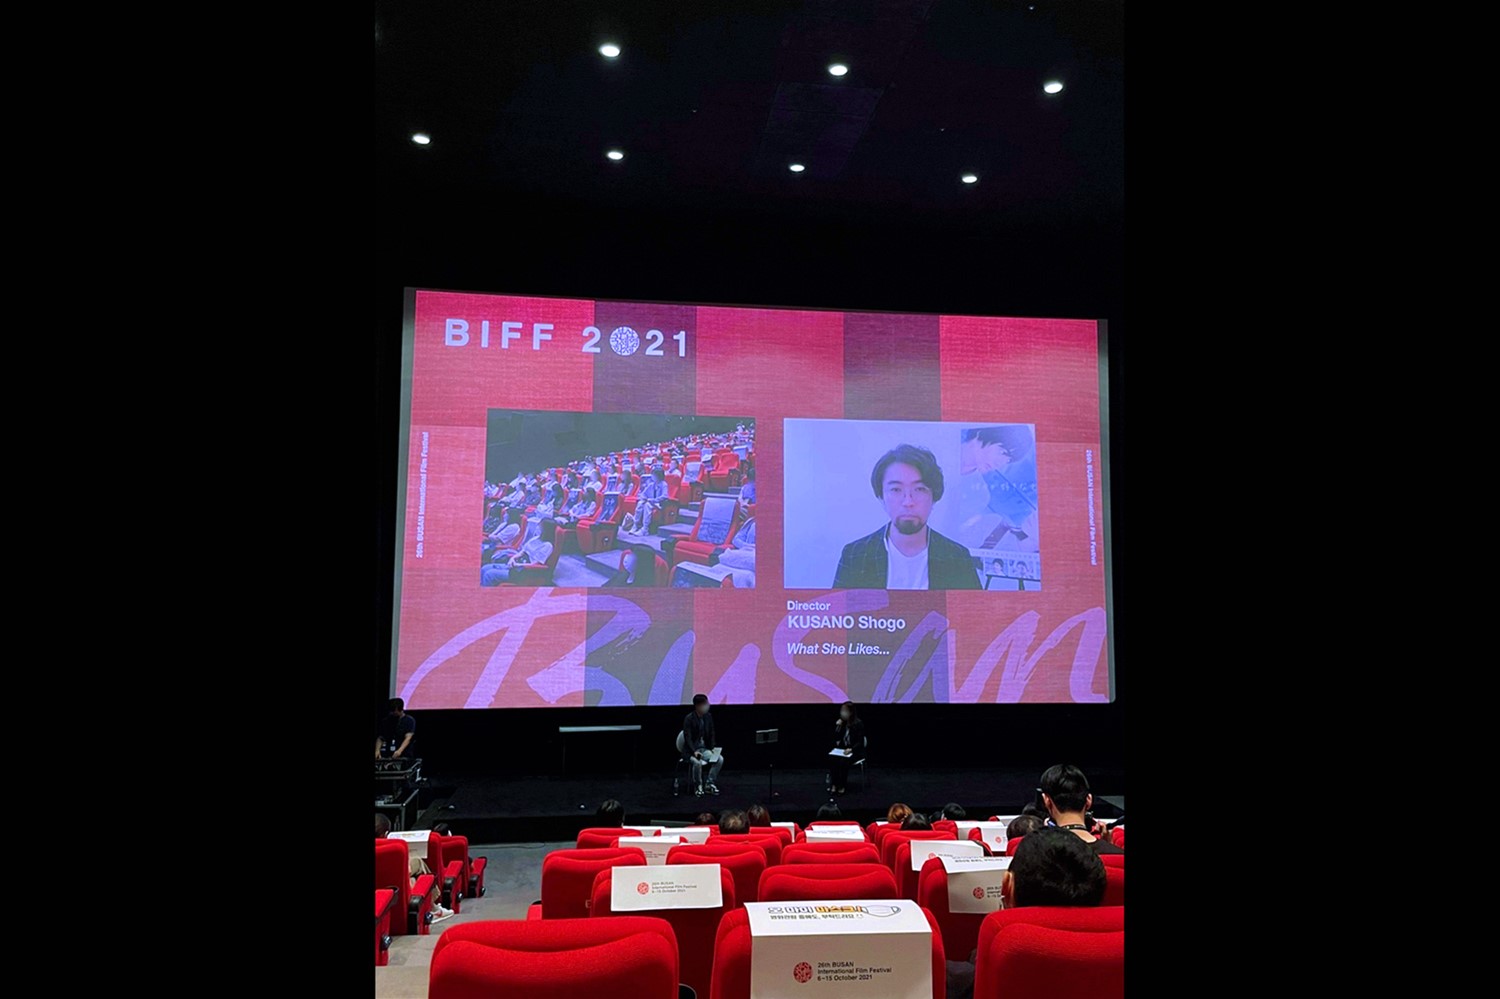 【写真】第26回 釜山国際映画祭(BIFF) Open Cinema部門 映画『彼女が好きなものは』Q&A (草野翔吾監督)